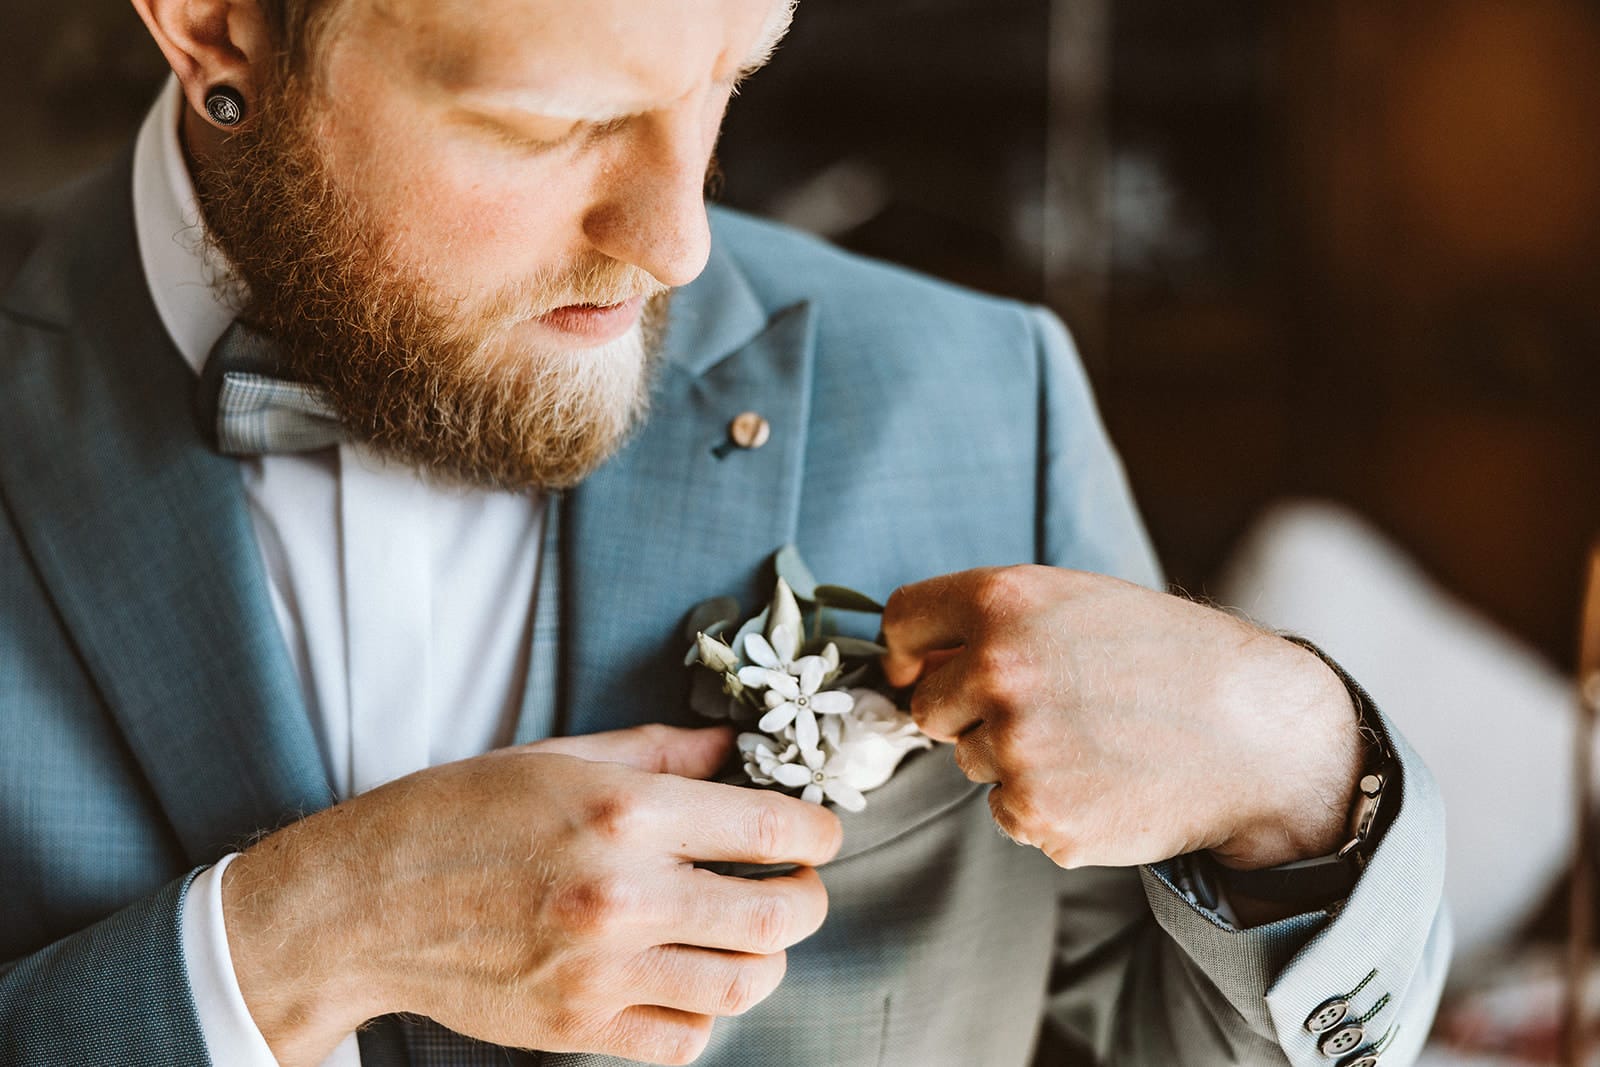 St. Mariä Empfängnis Essen Hochzeitsfotograf - Bräutigam überprüft Anstecker Blume Getting Ready